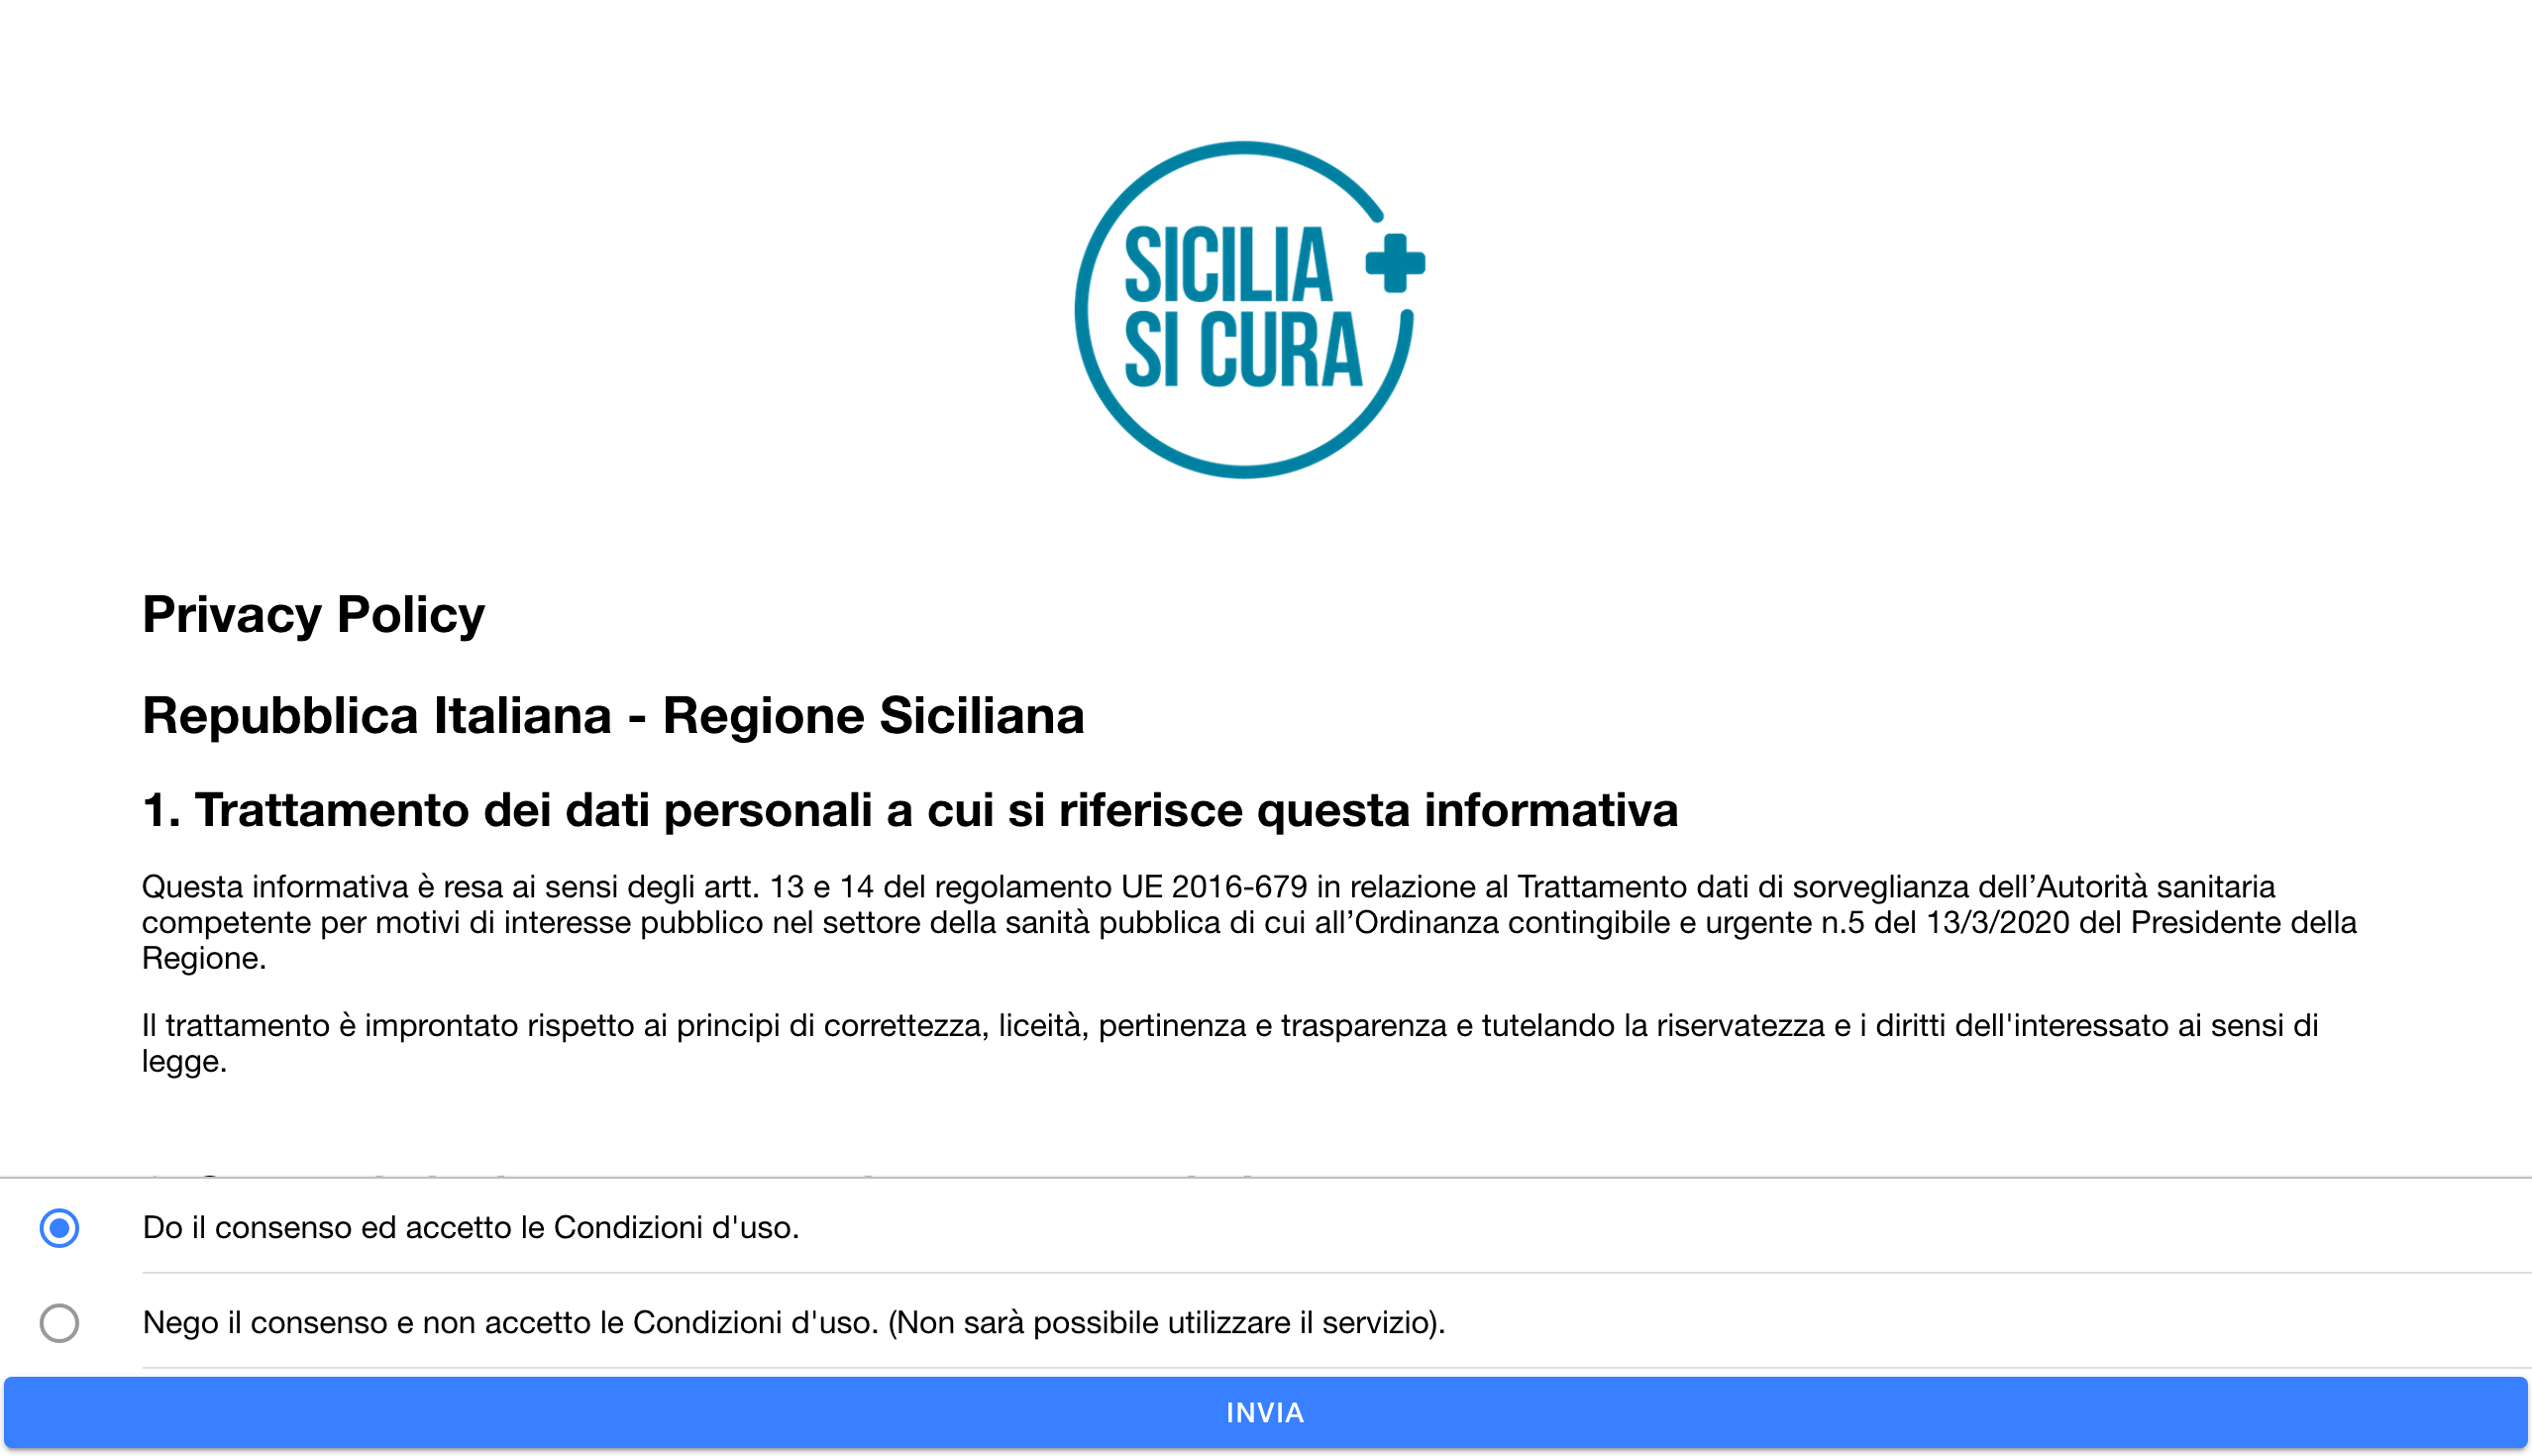 Al momento stai visualizzando #SiciliaSiCura: Ordinanza 24 della Regione Siciliana per l’accesso alla Regione in conformità con le regole di contenimento e contrasto al COVID-19